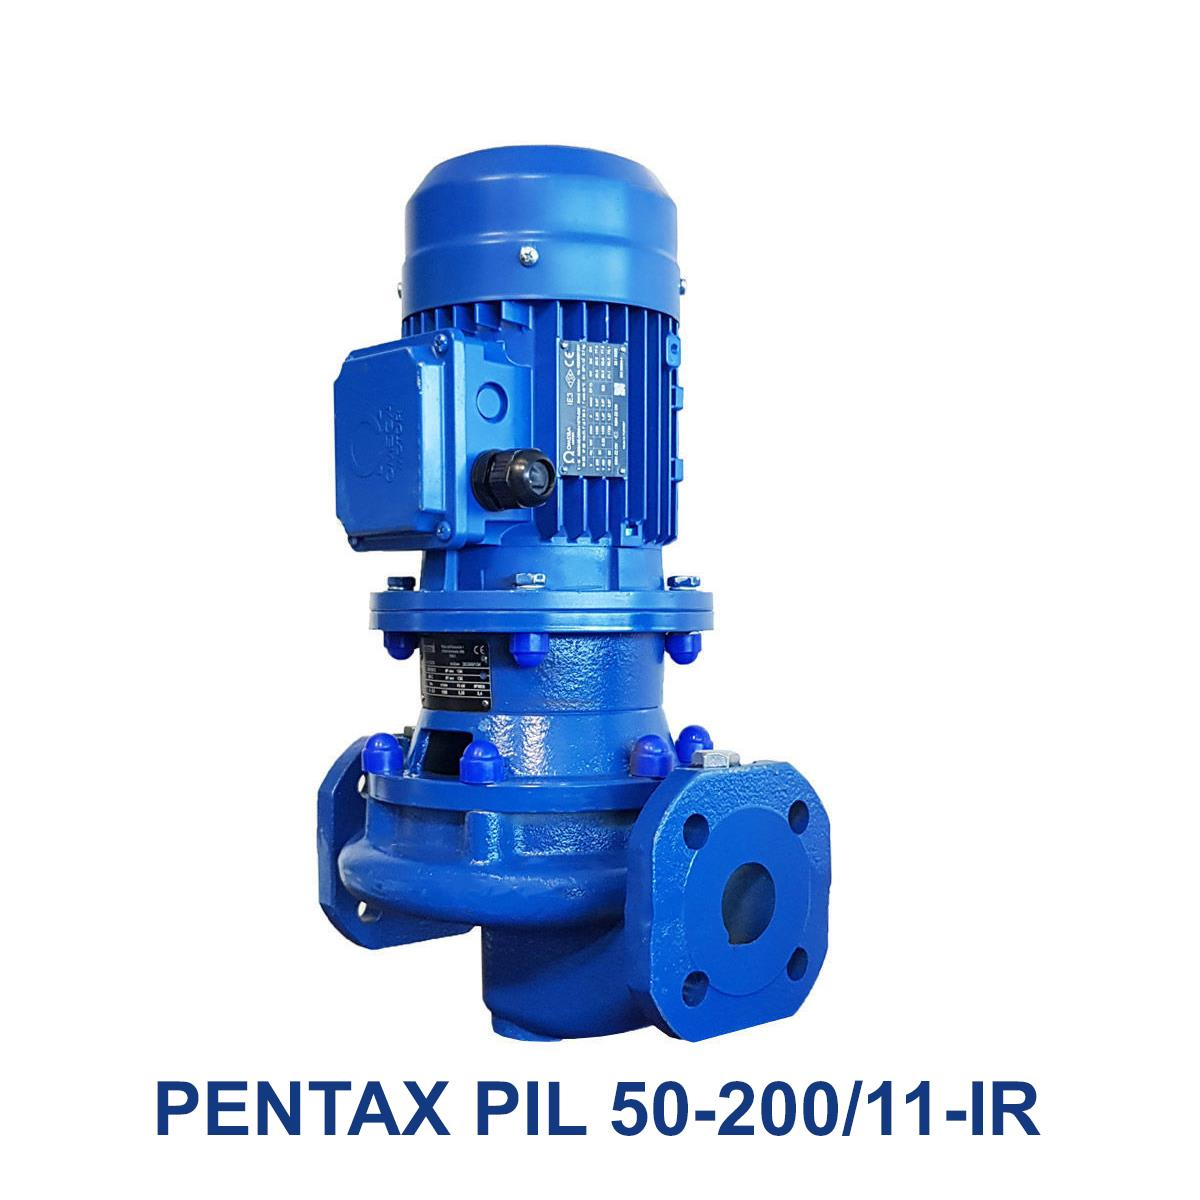 PENTAX-PIL-50-200-11-IR